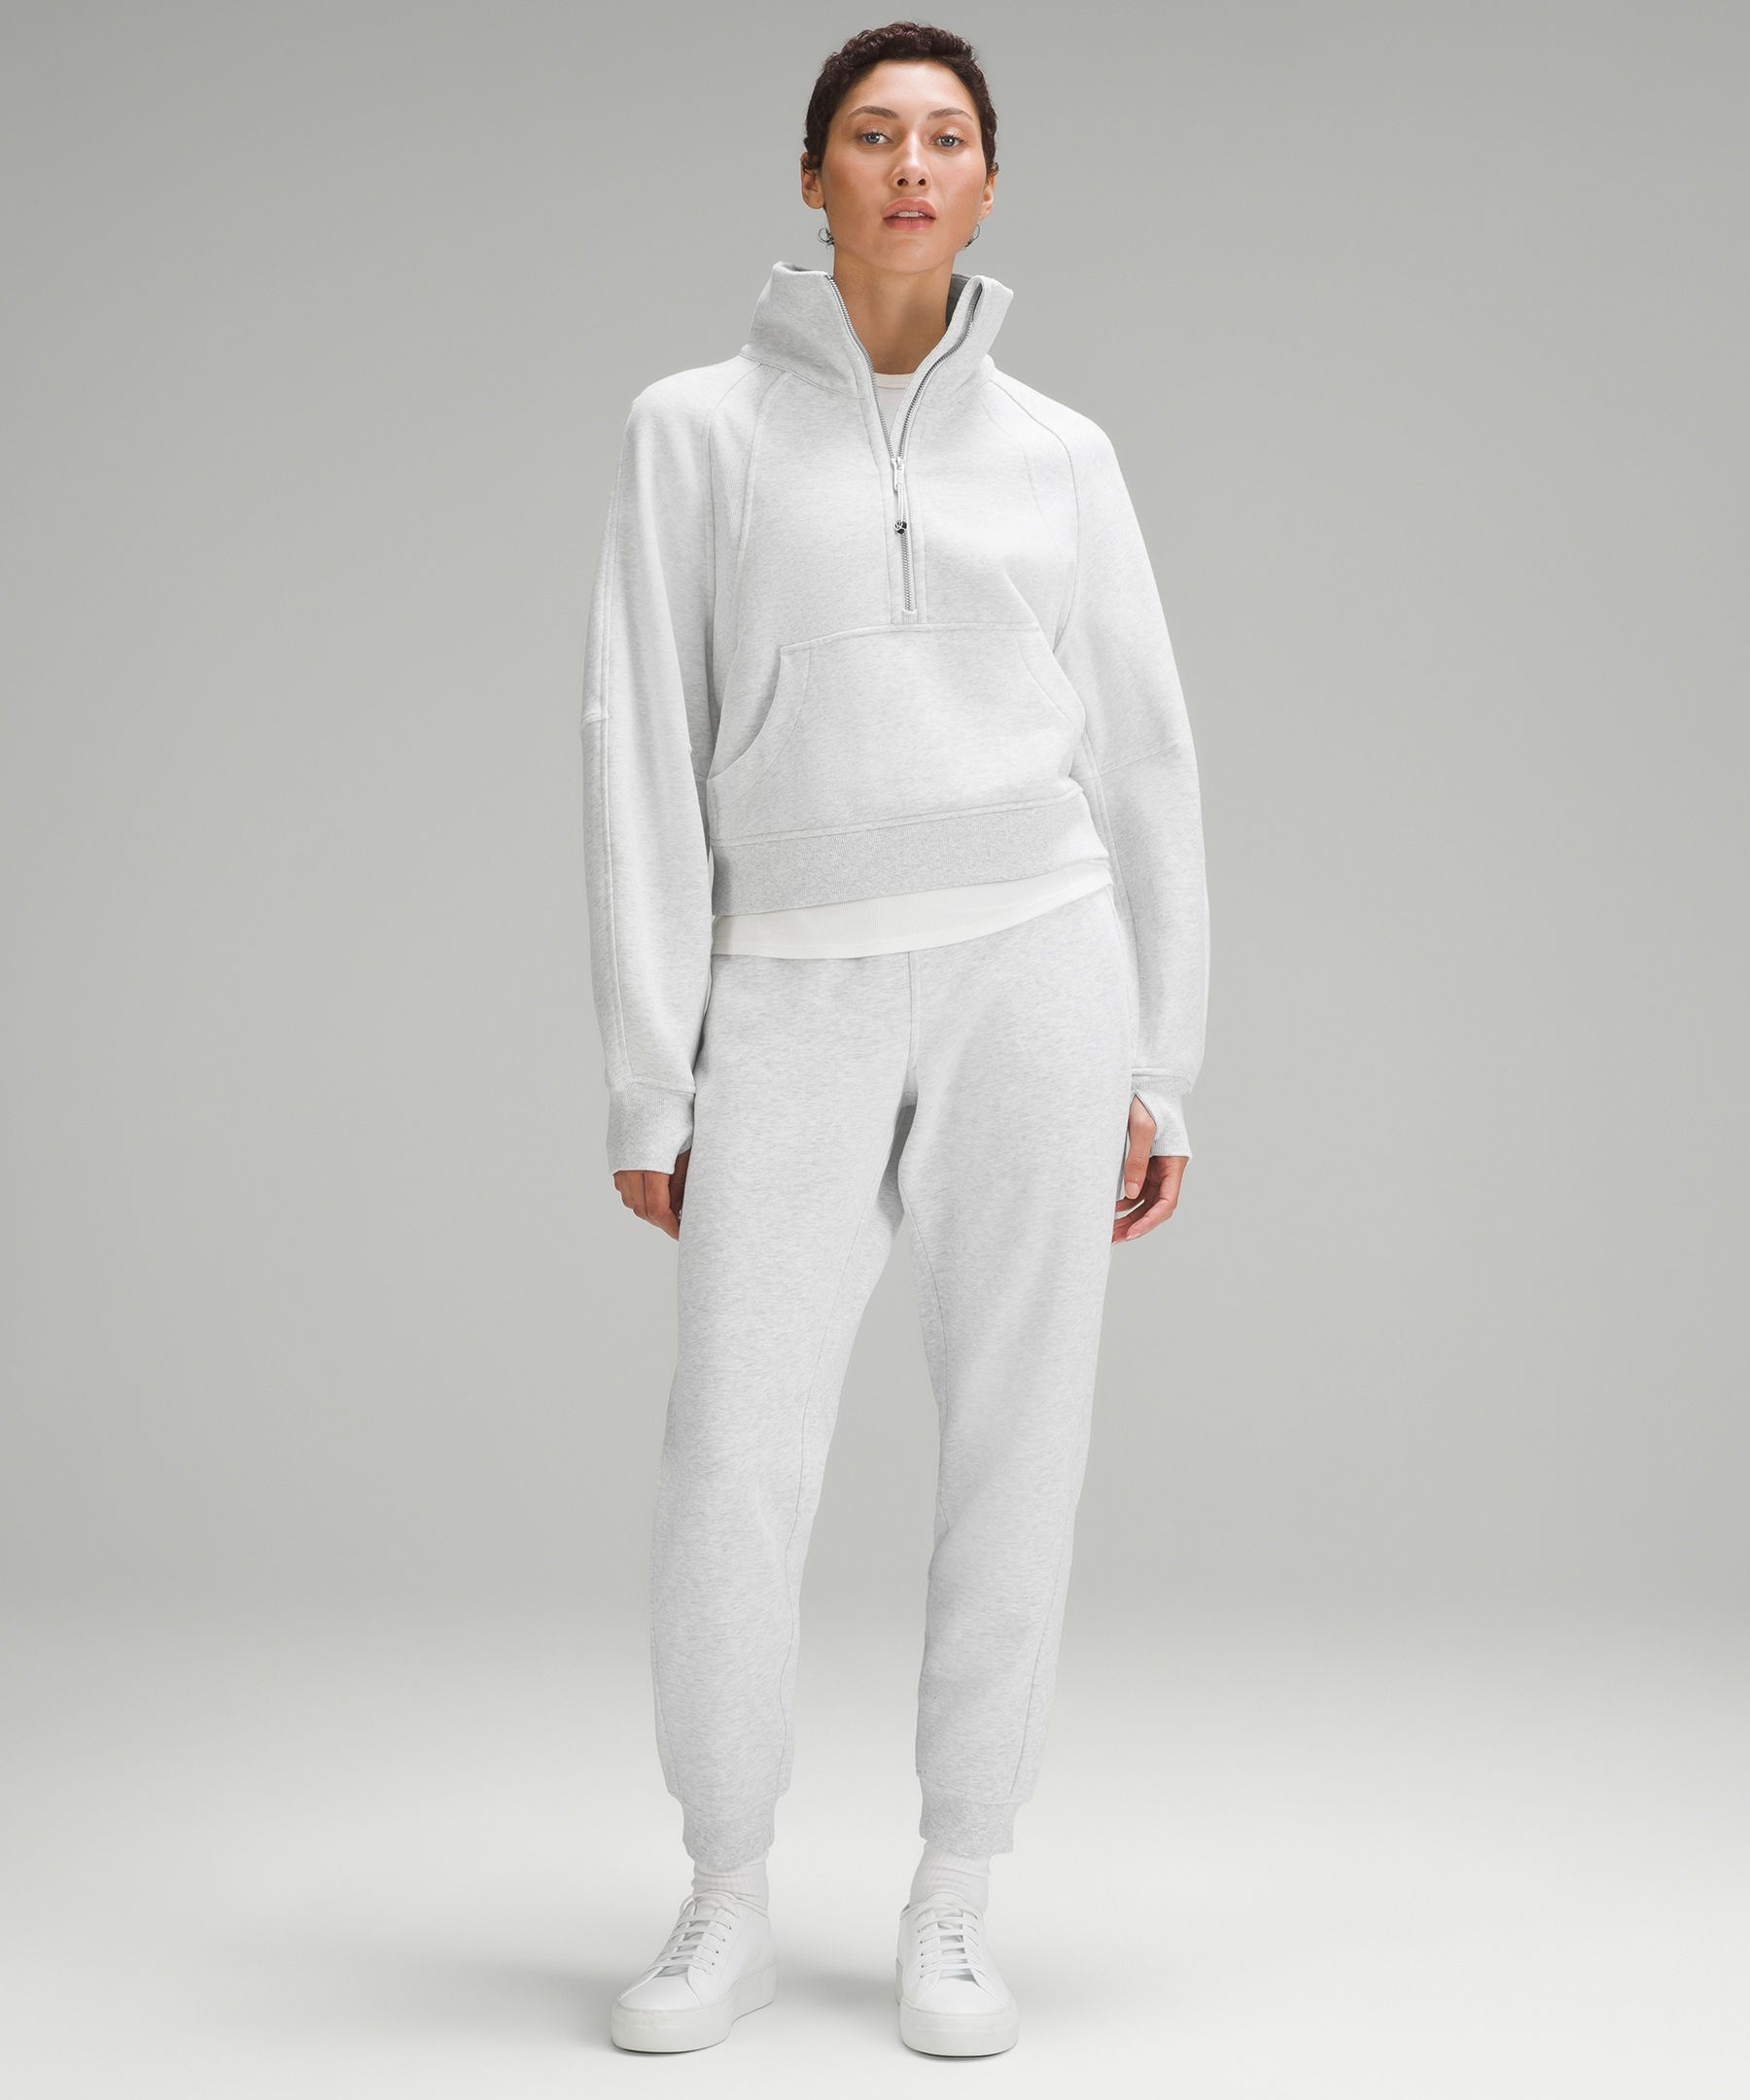 Lululemon White Opal Scuba Half Zip (M/L) - Athletic apparel